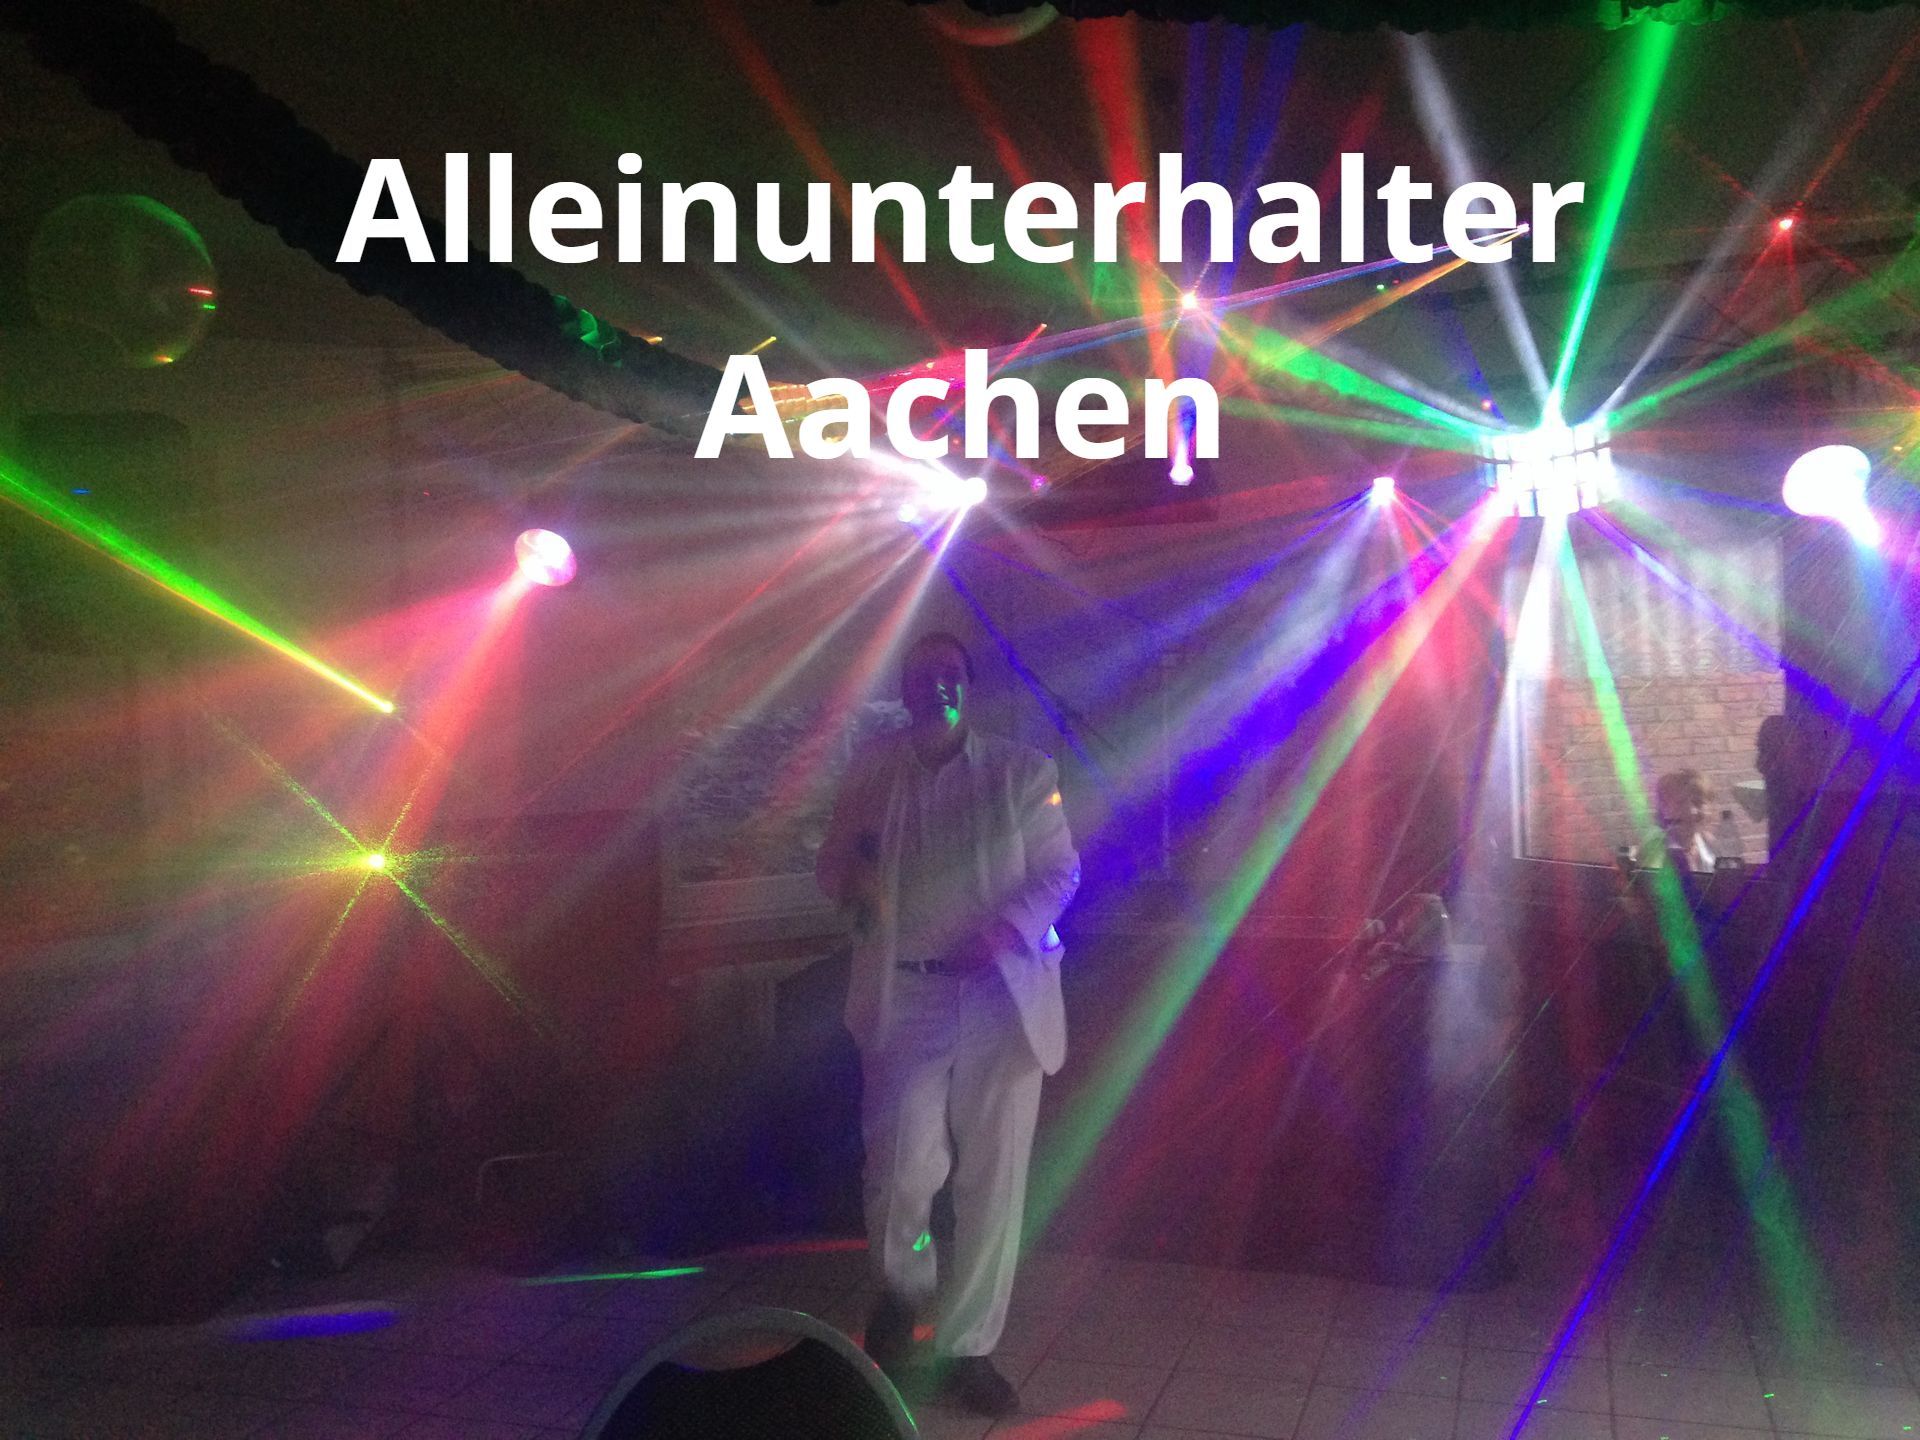 Alleinunterhalter Aachen - Keyboarder Karl - Top DJ & Live Musik besagt eigentlich schon alles.